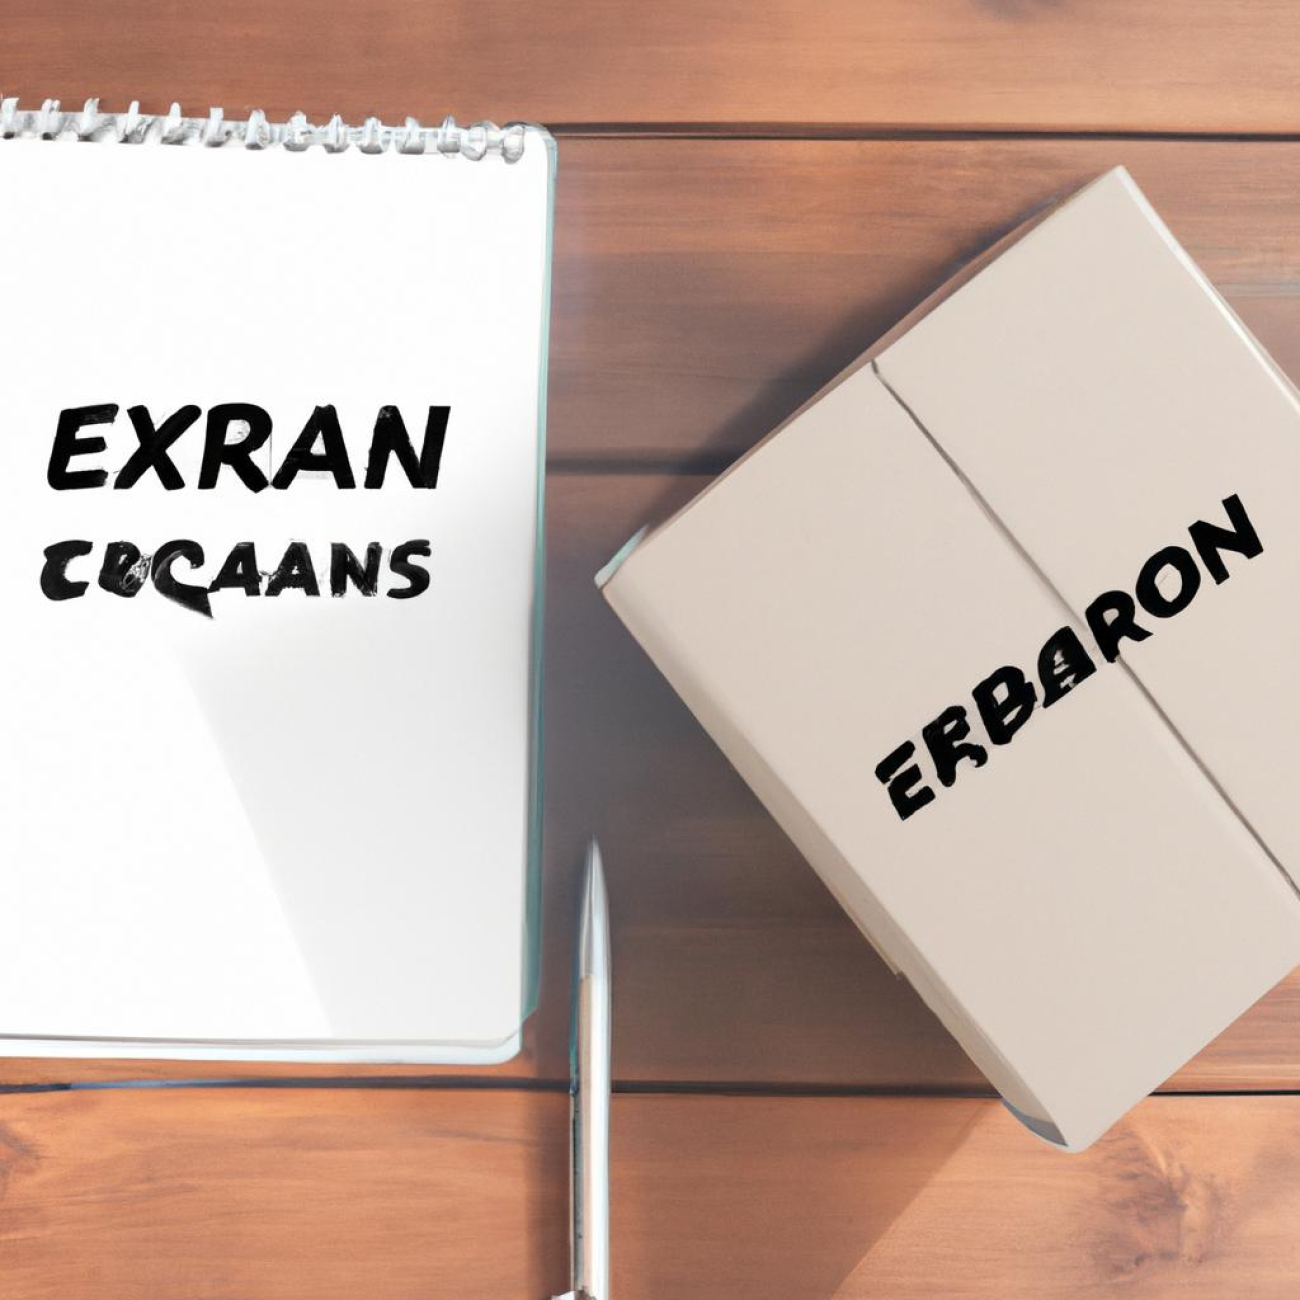 Výhody a nevýhody nákupu Erexan online